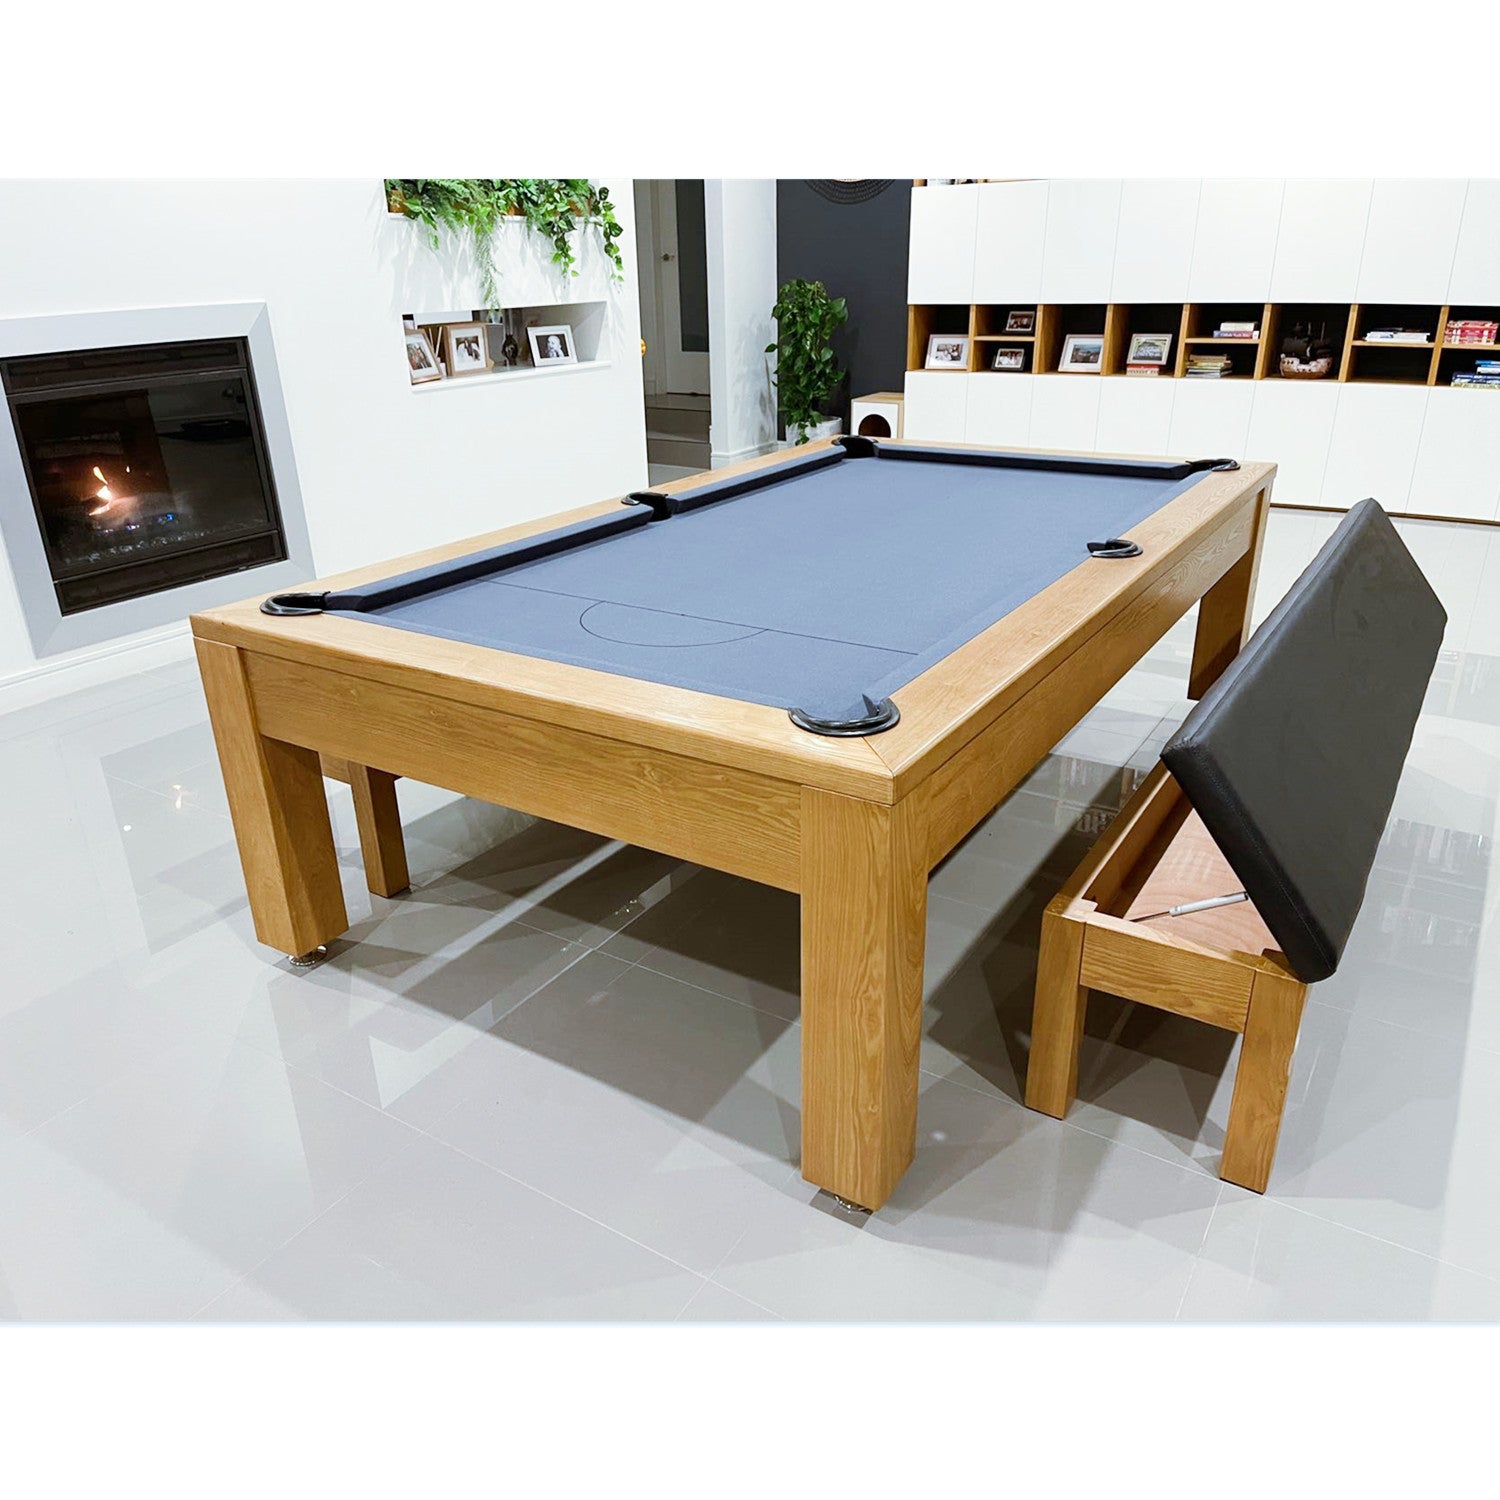 Holiday Luxury Slate Pool Table 8FT-Custom Made